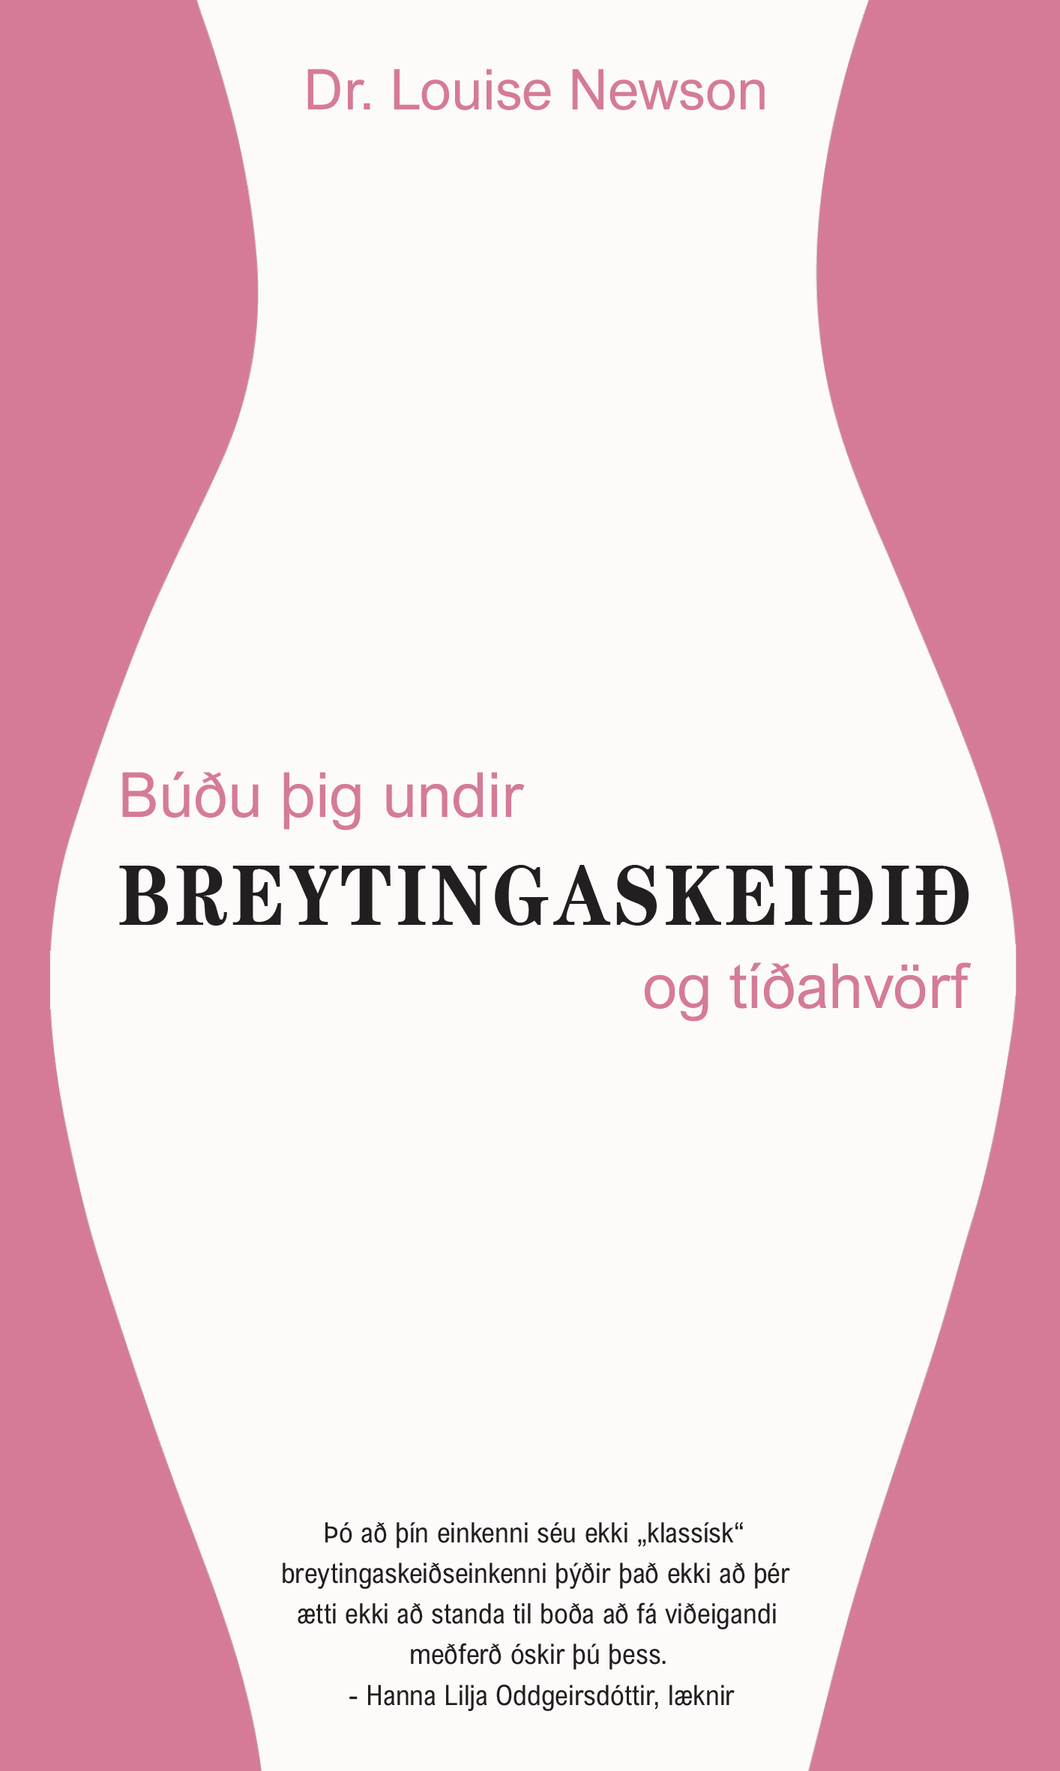 Búðu þig undir breytingaskeiðið og tíðahvörf